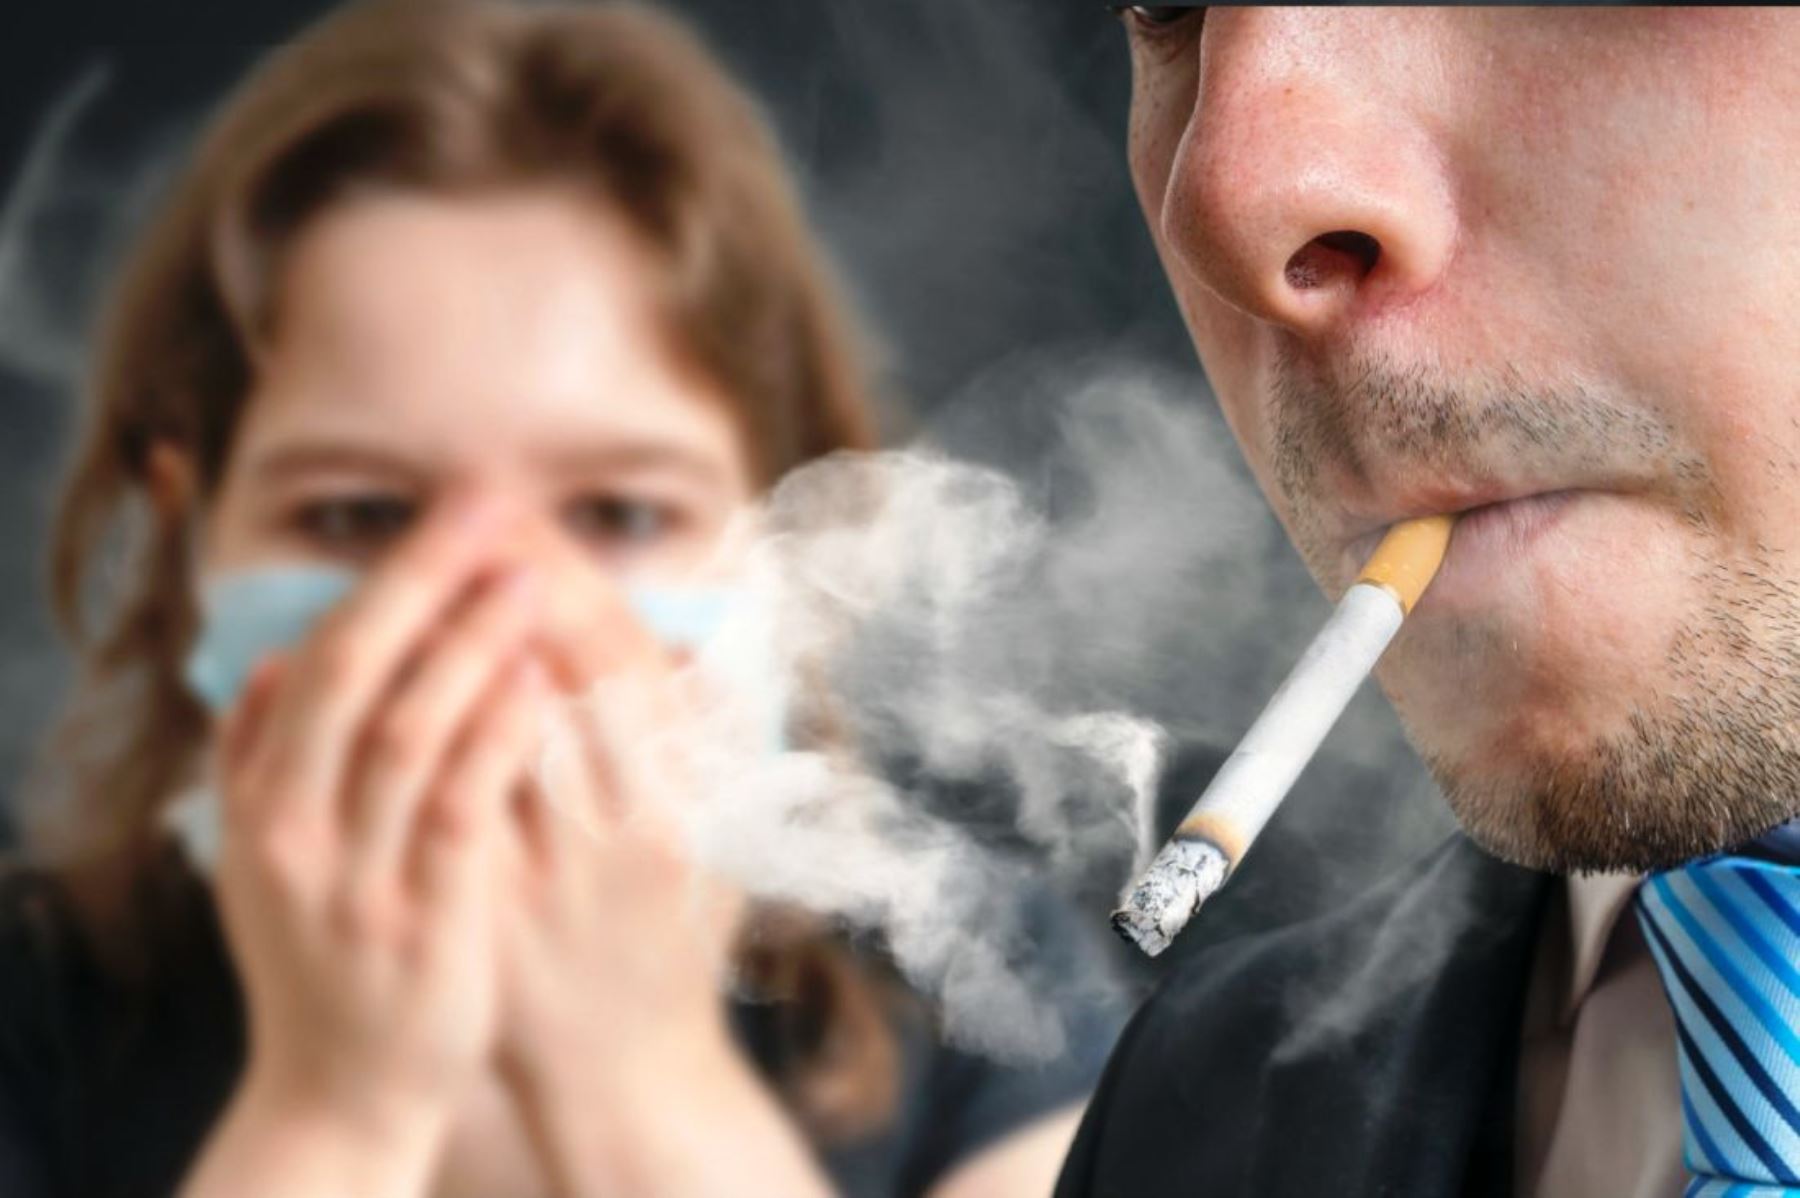 El tabaco perjudica la salud sexual y reproductiva de las parejas